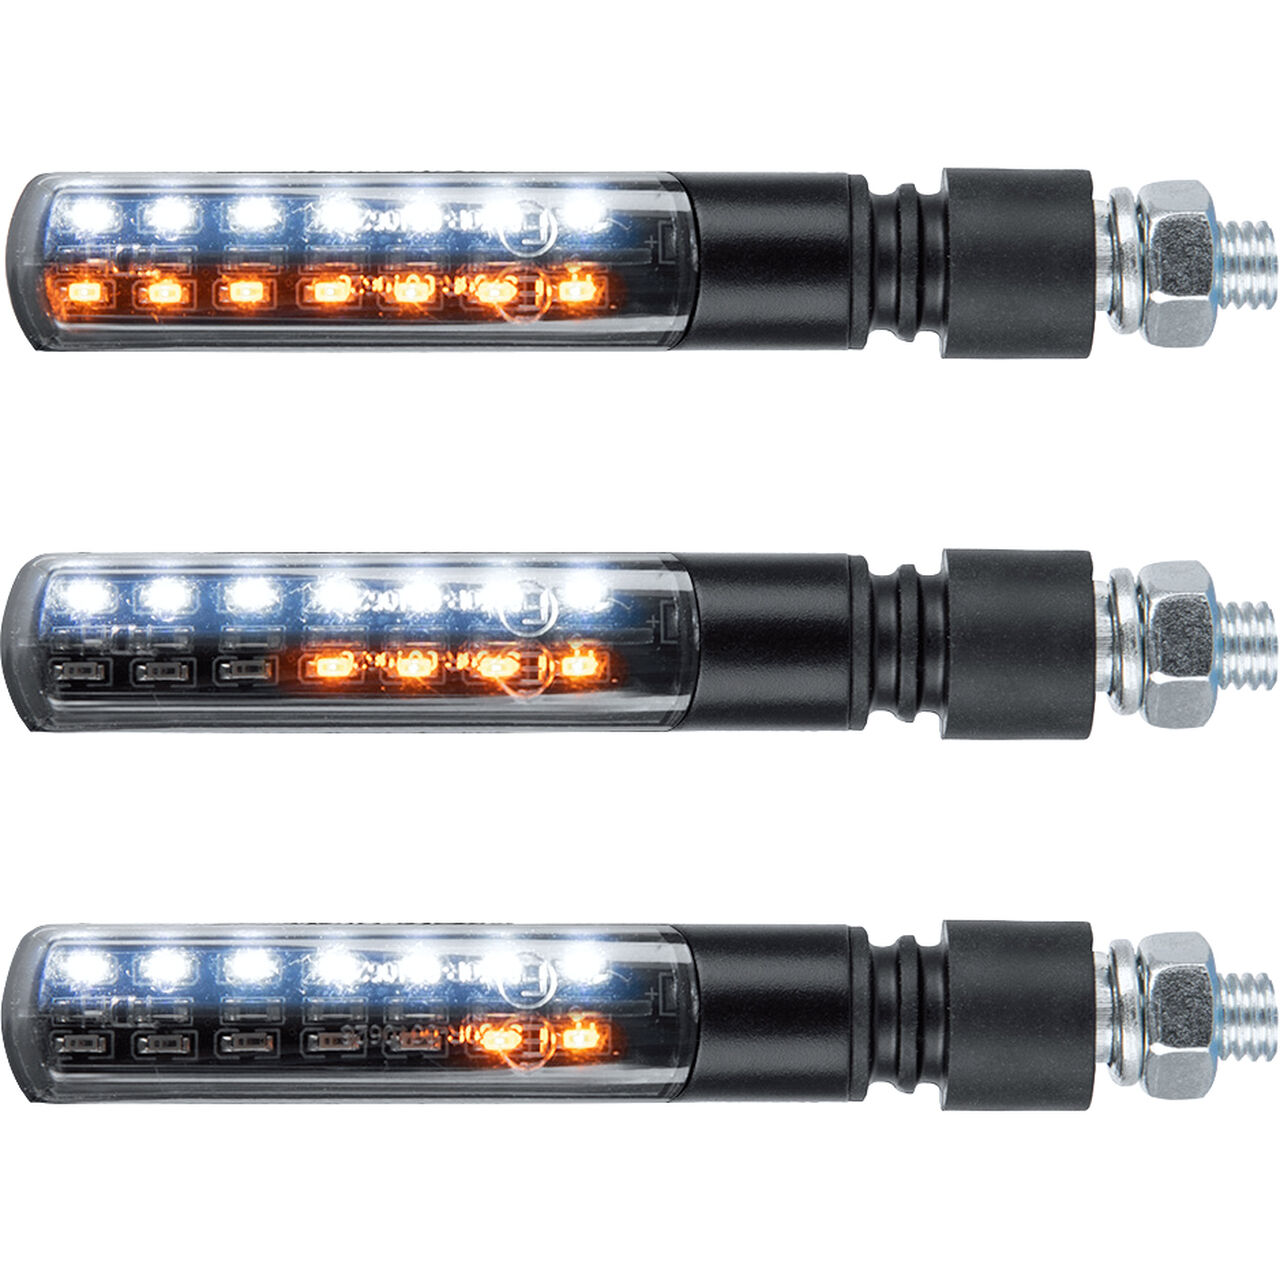 LED Blinker Koso Infinity-D 24,61 x 20,59 x 92mm M8 mit Lauflichtfunktion E- geprüft universal für Motorräder